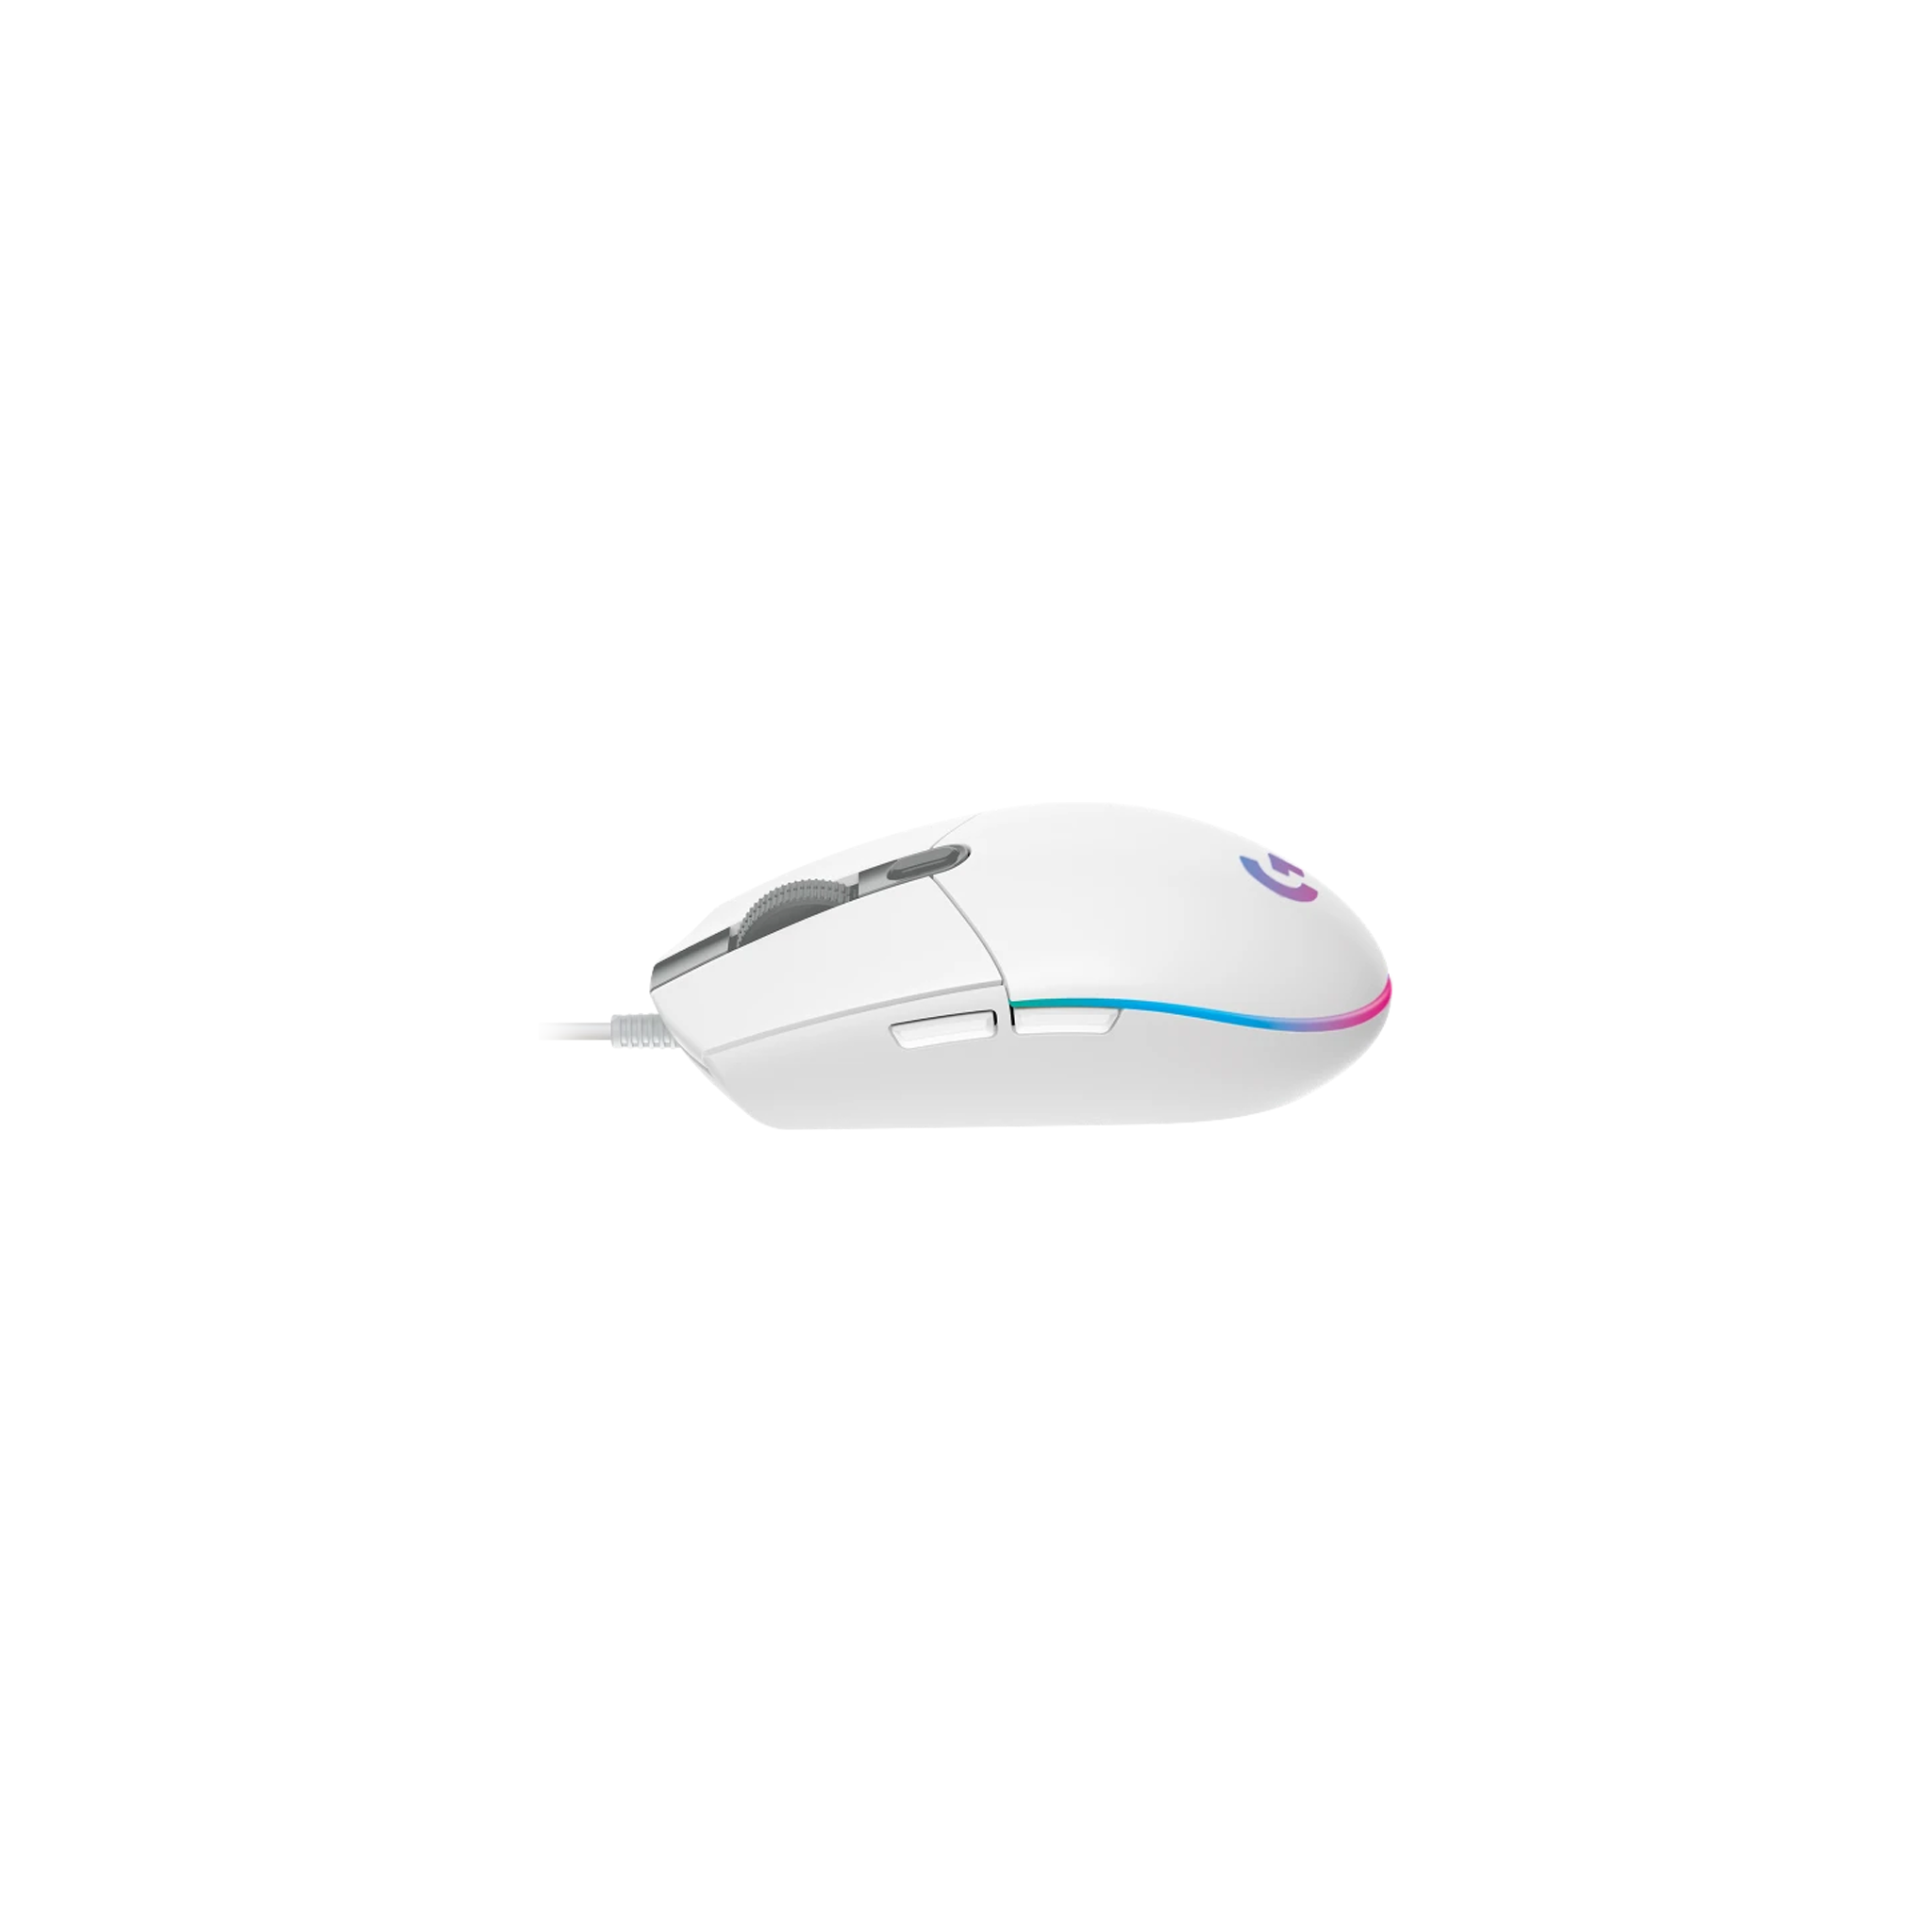 Logitech G102 Lightsync-White-USB Mouse